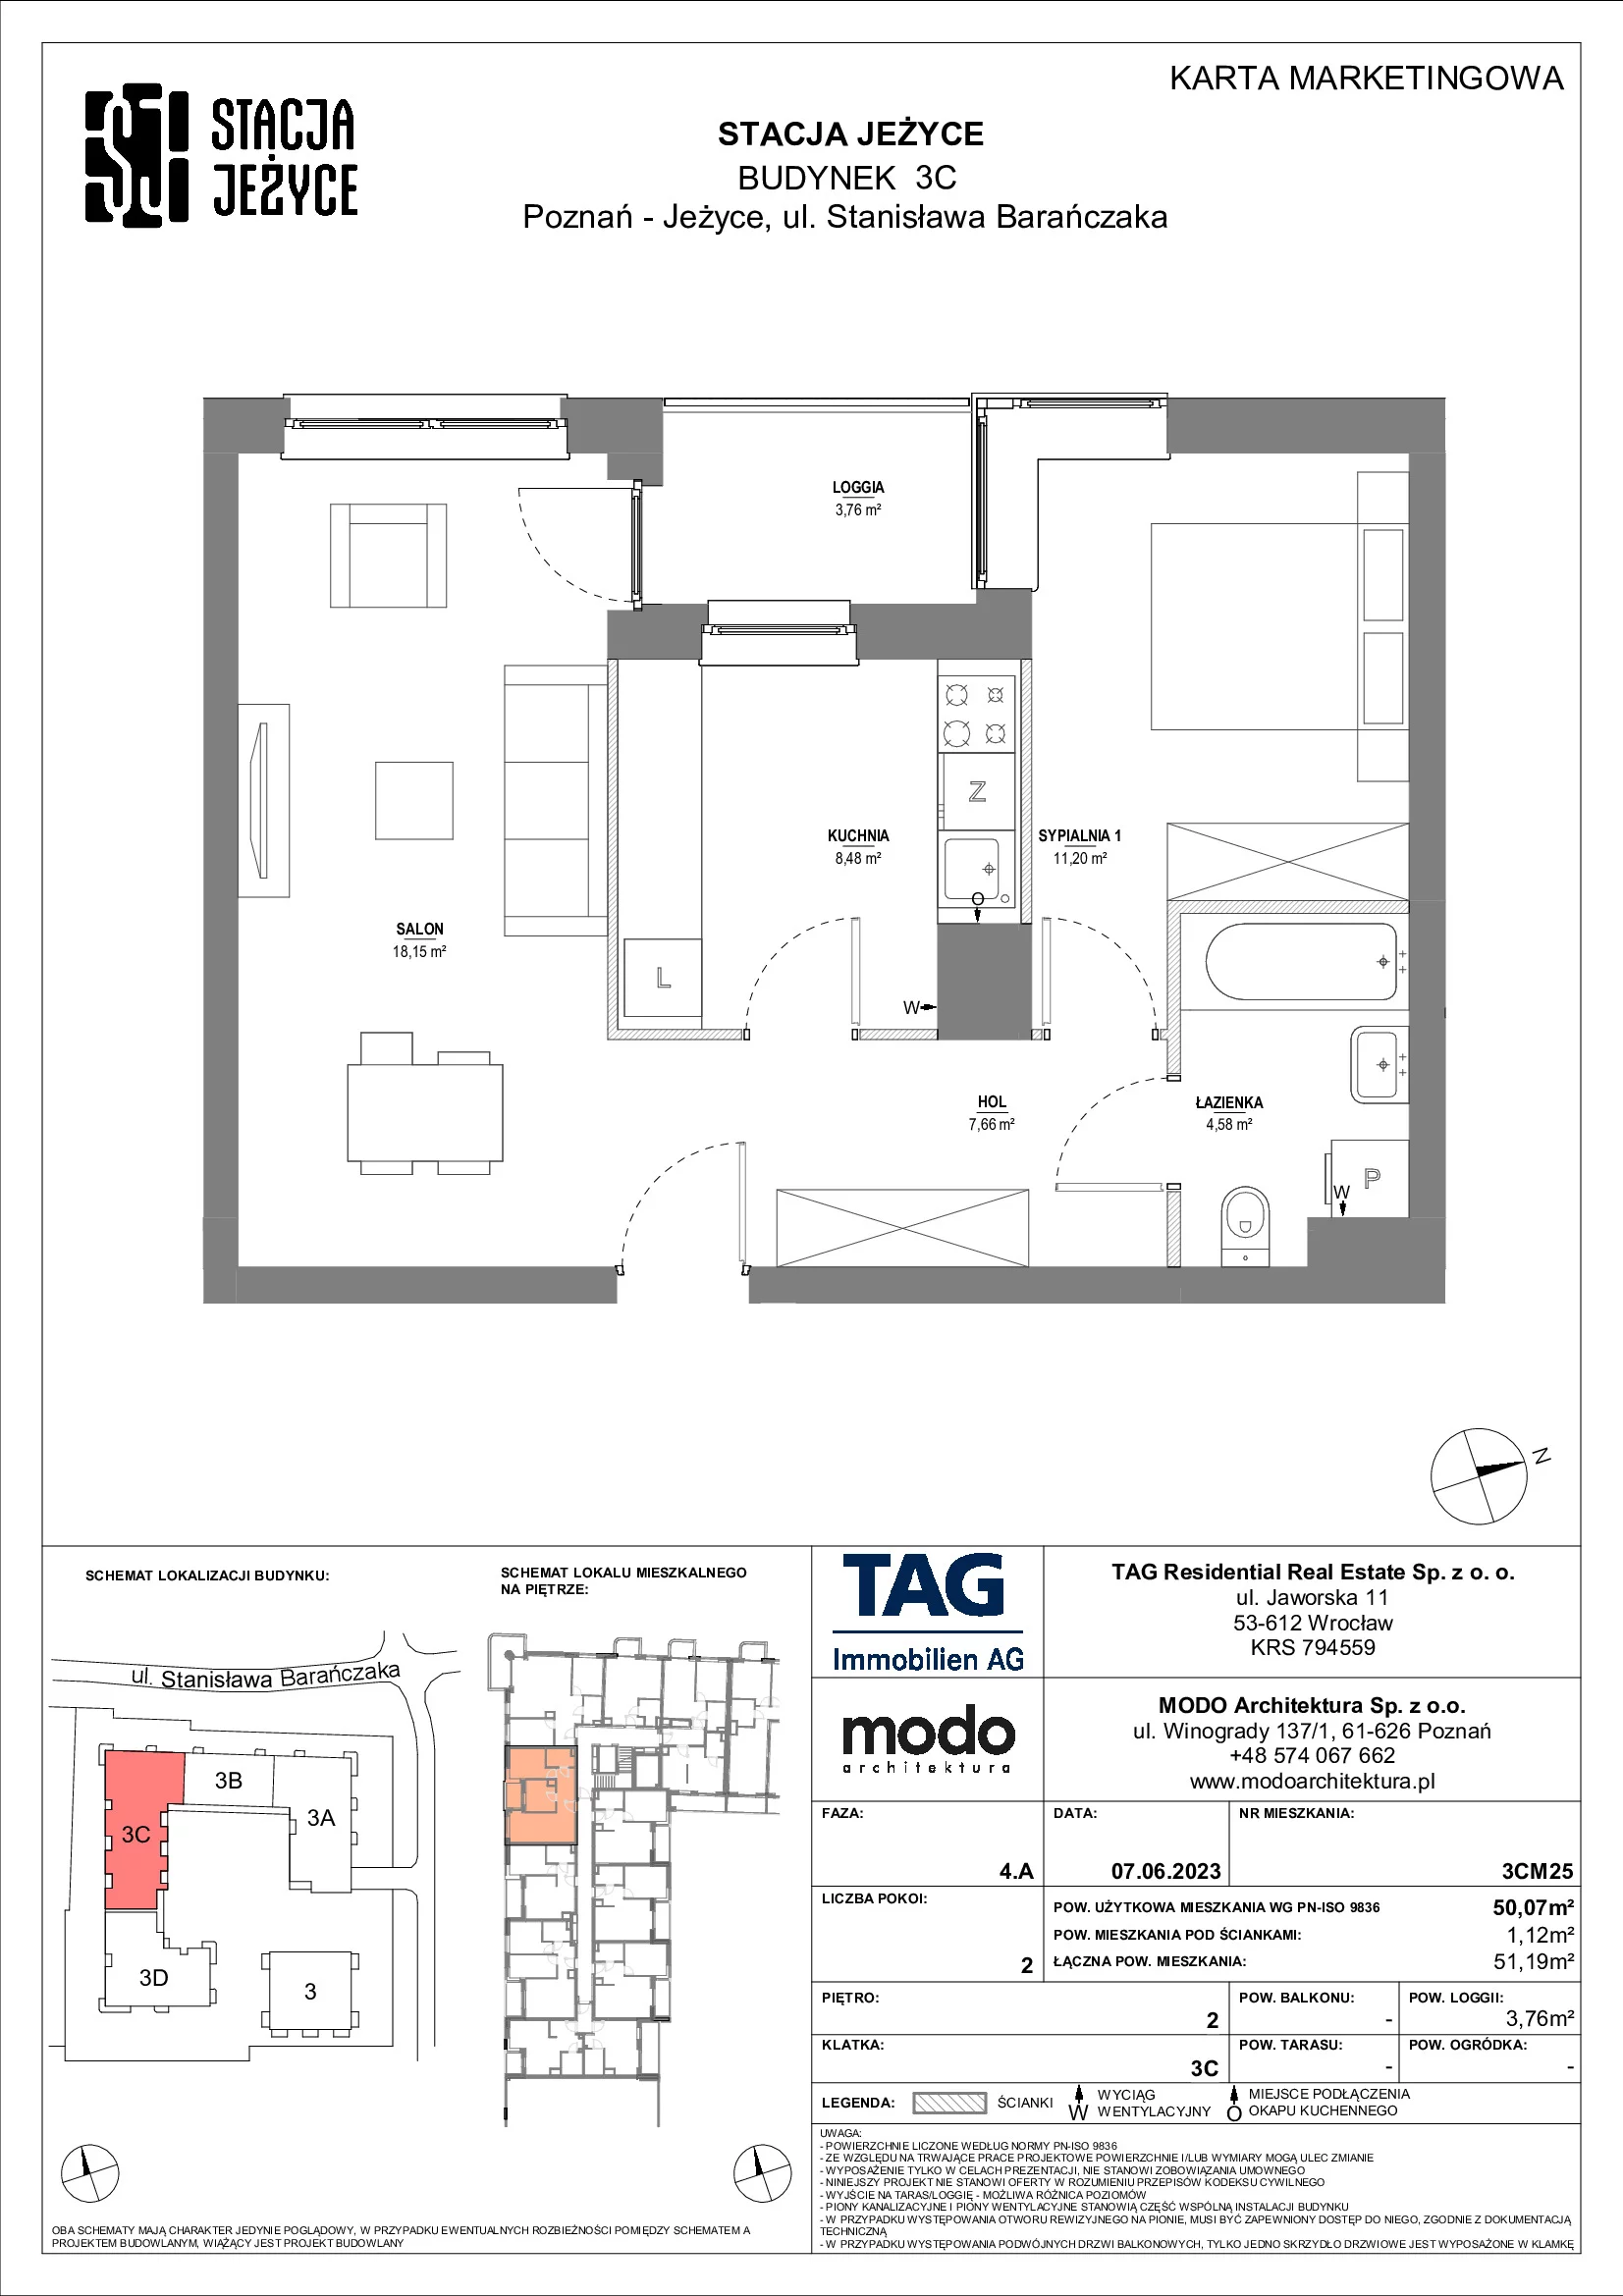 Mieszkanie 50,07 m², piętro 2, oferta nr 3CM25, Stacja Jeżyce, Poznań, Jeżyce, Jeżyce, ul. Stanisława Barańczaka 3